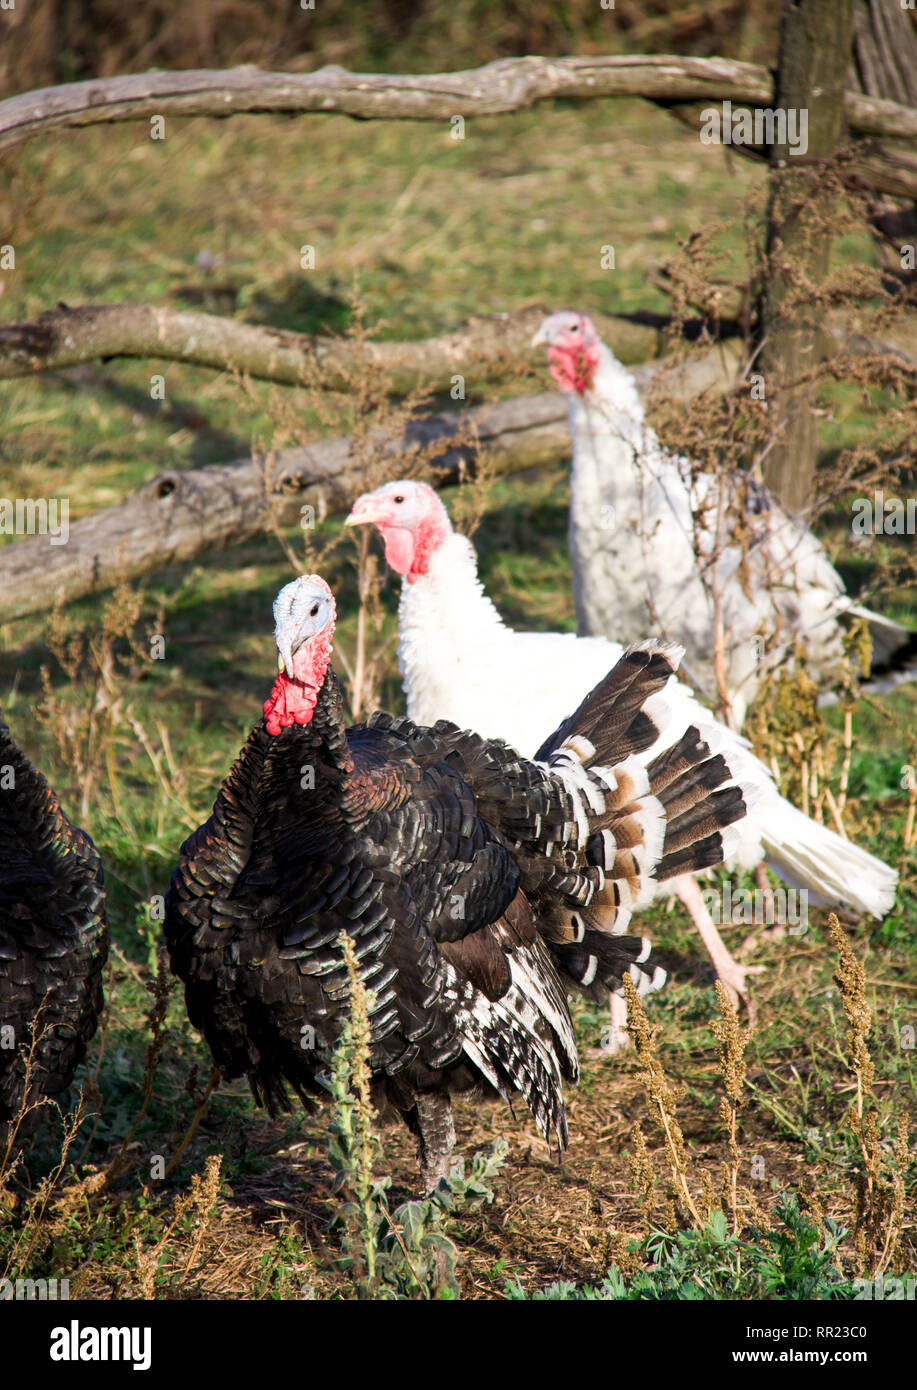 turkeys graze near a wooden fence in the village Stock Photo